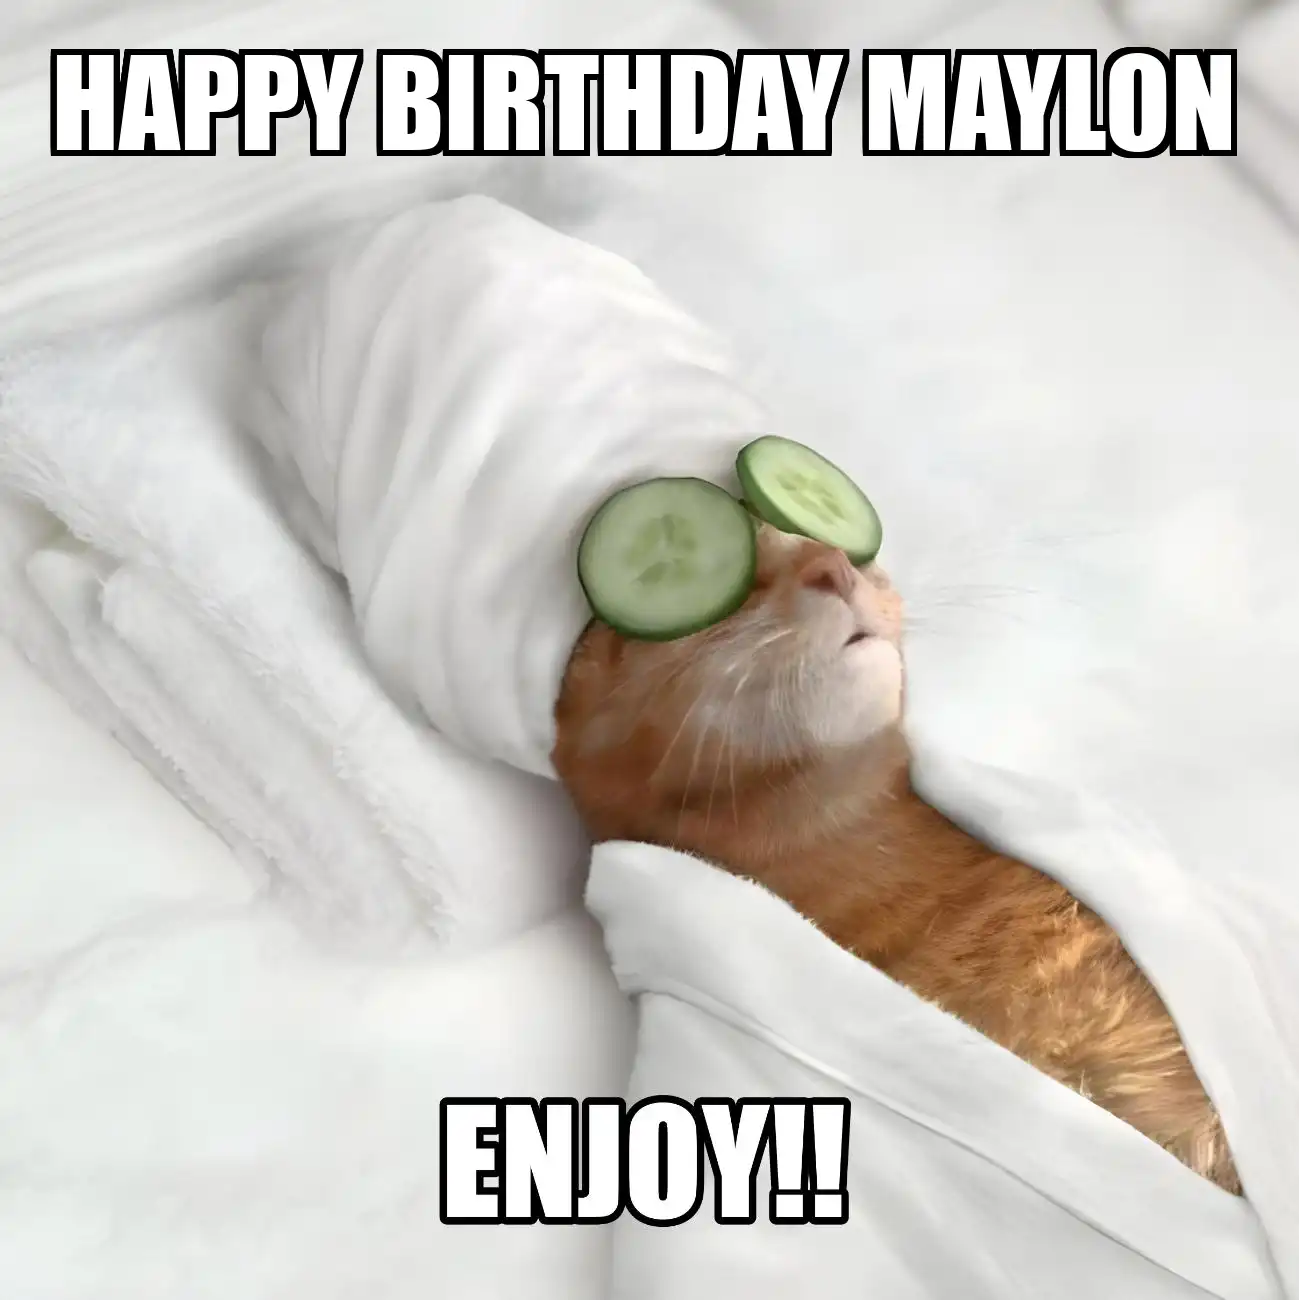 Happy Birthday Maylon Enjoy Cat Meme